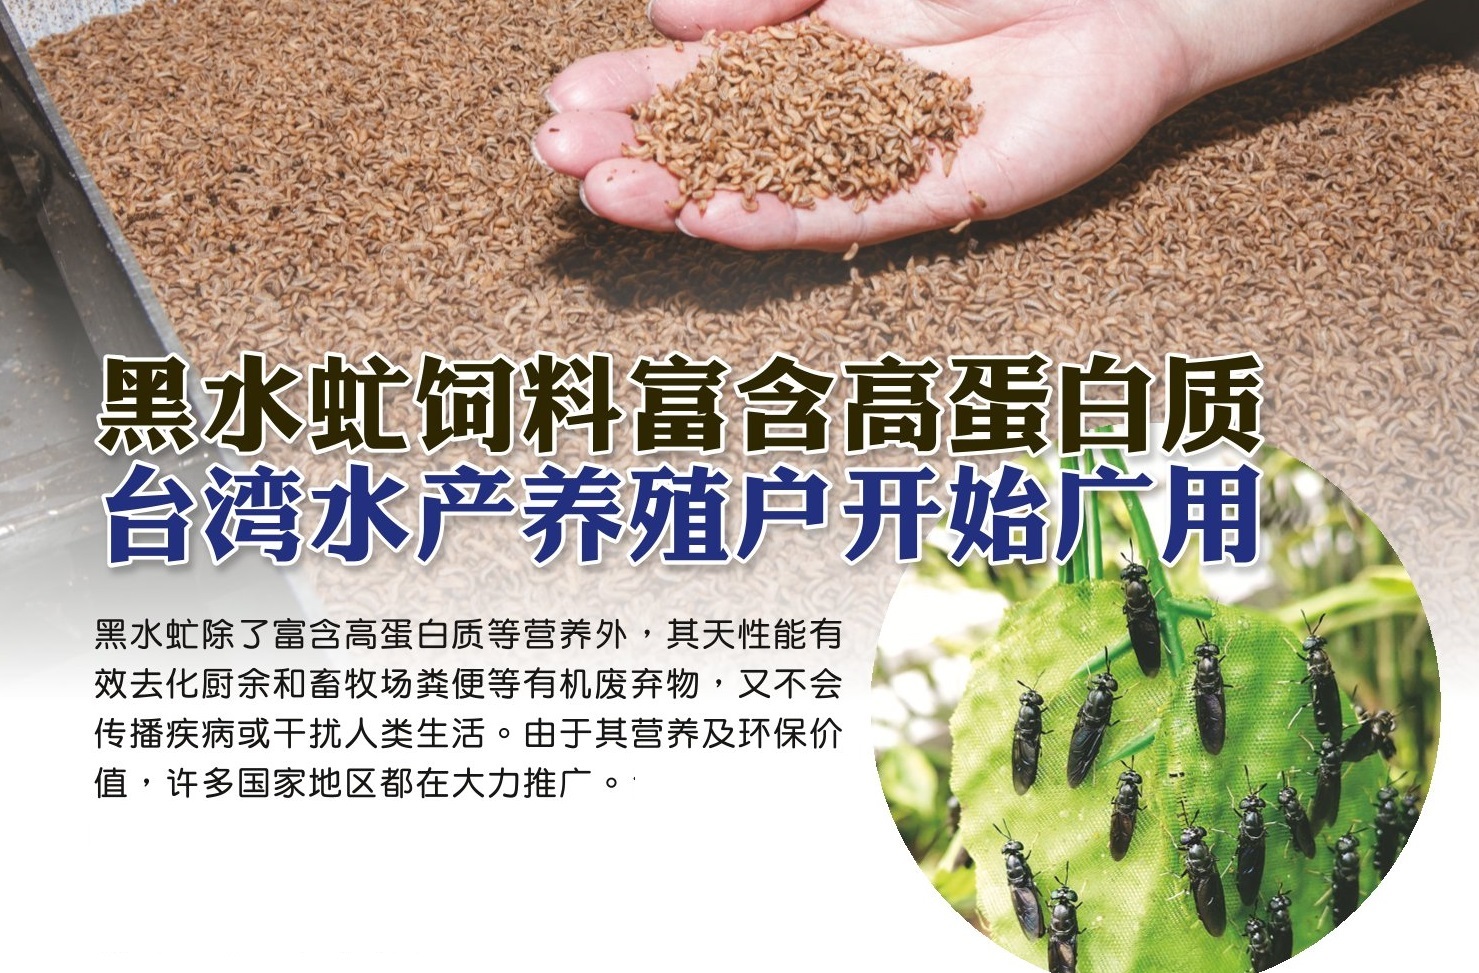 黑水虻饲料富含高蛋白质 台湾水产养殖户开始广用 - 农牧世界